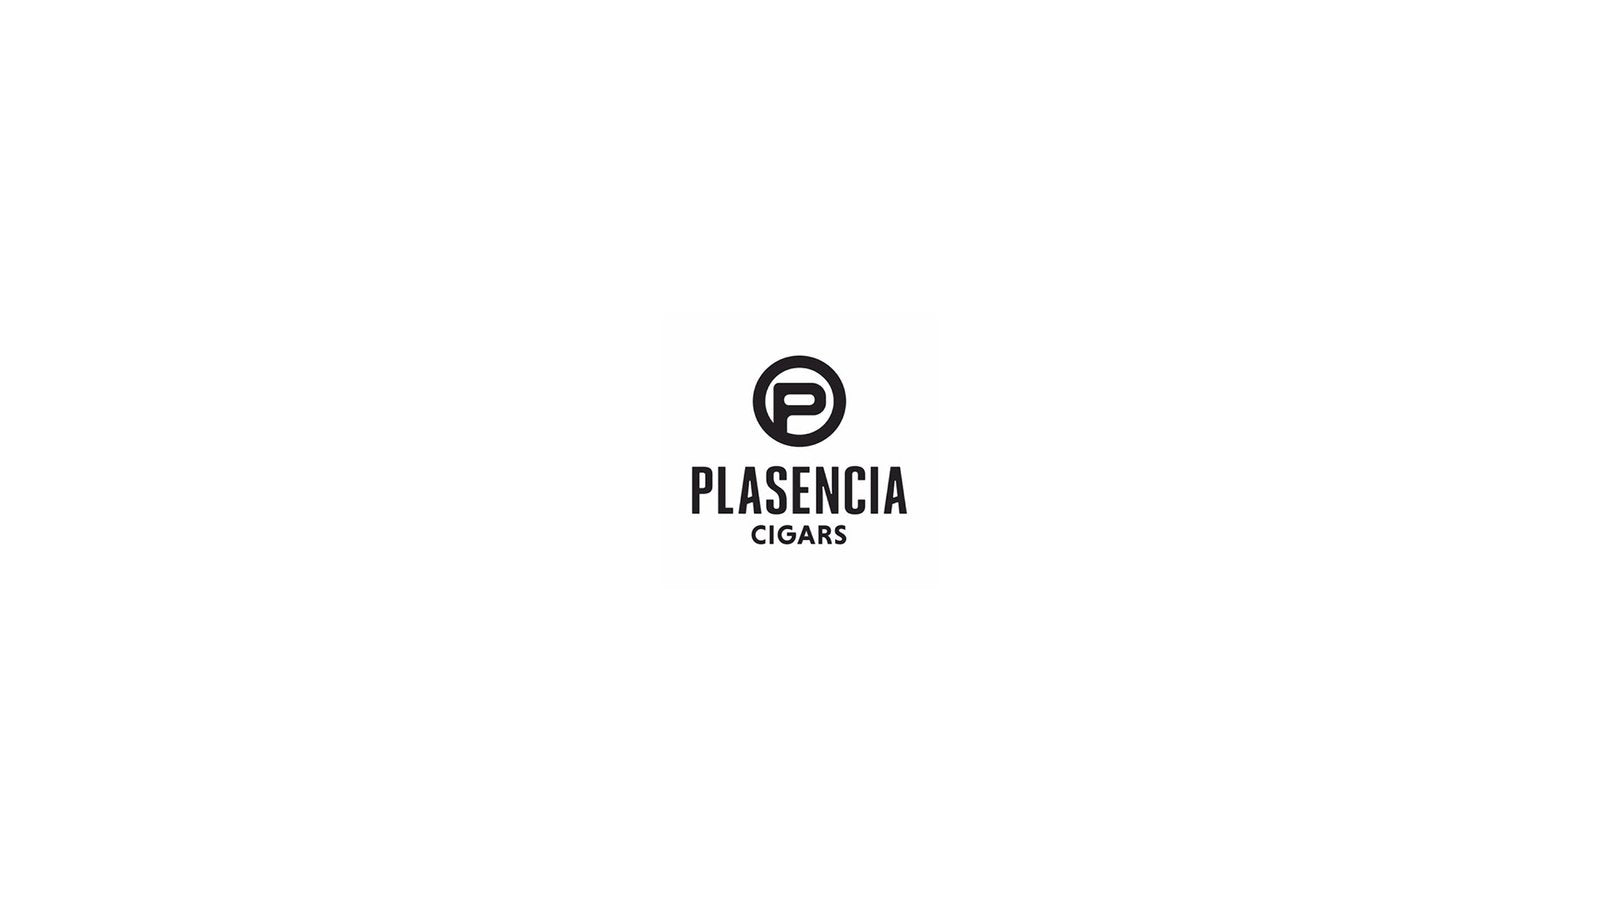 Plasencia Cosecha 151